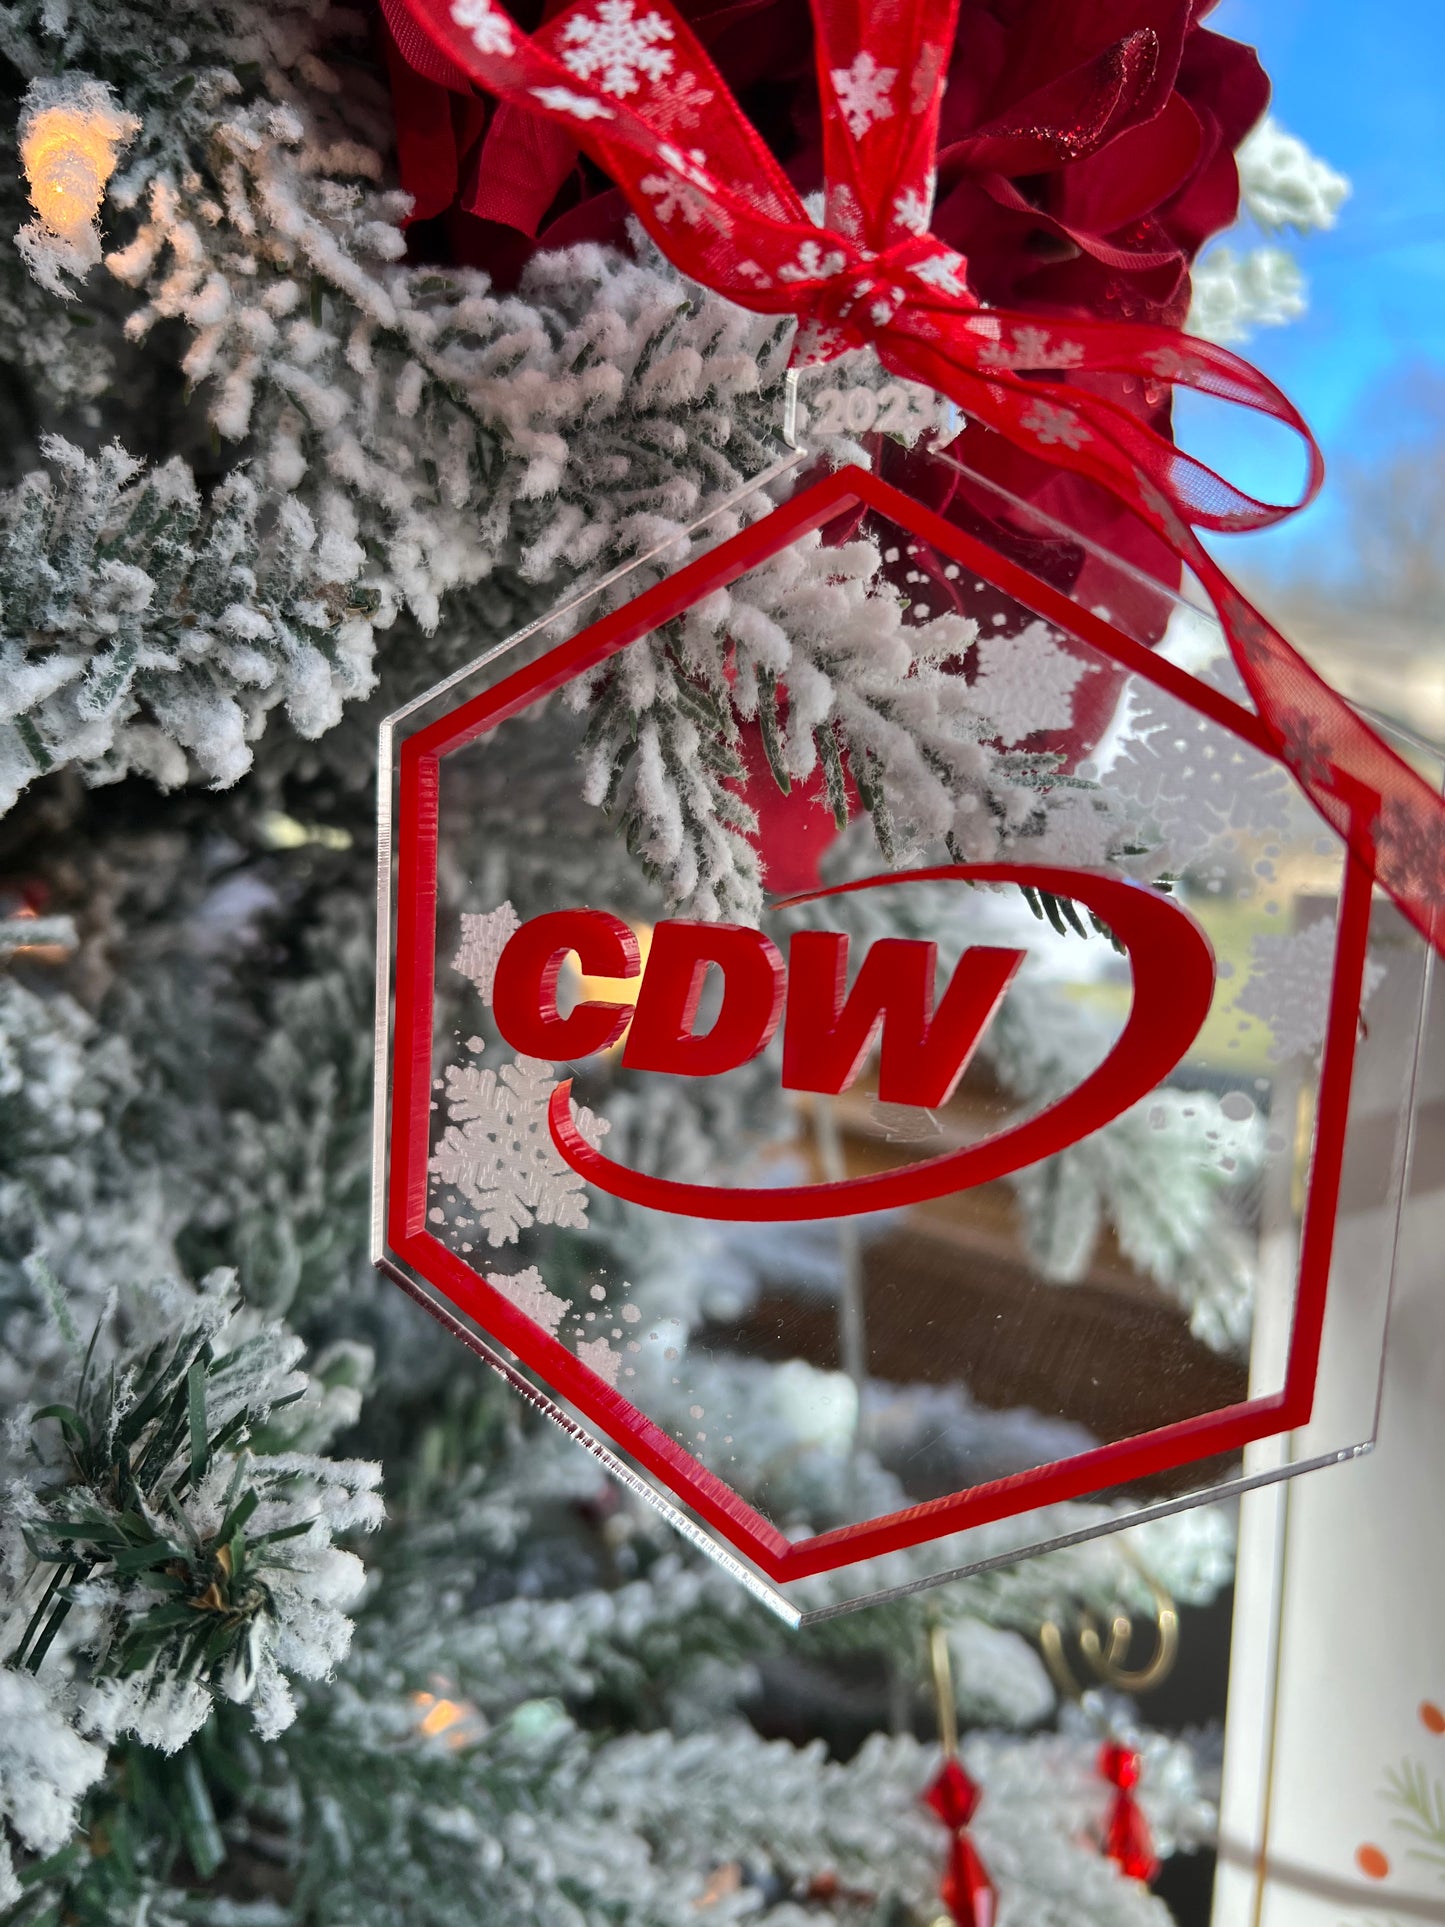 Custom Ornaments for CDW